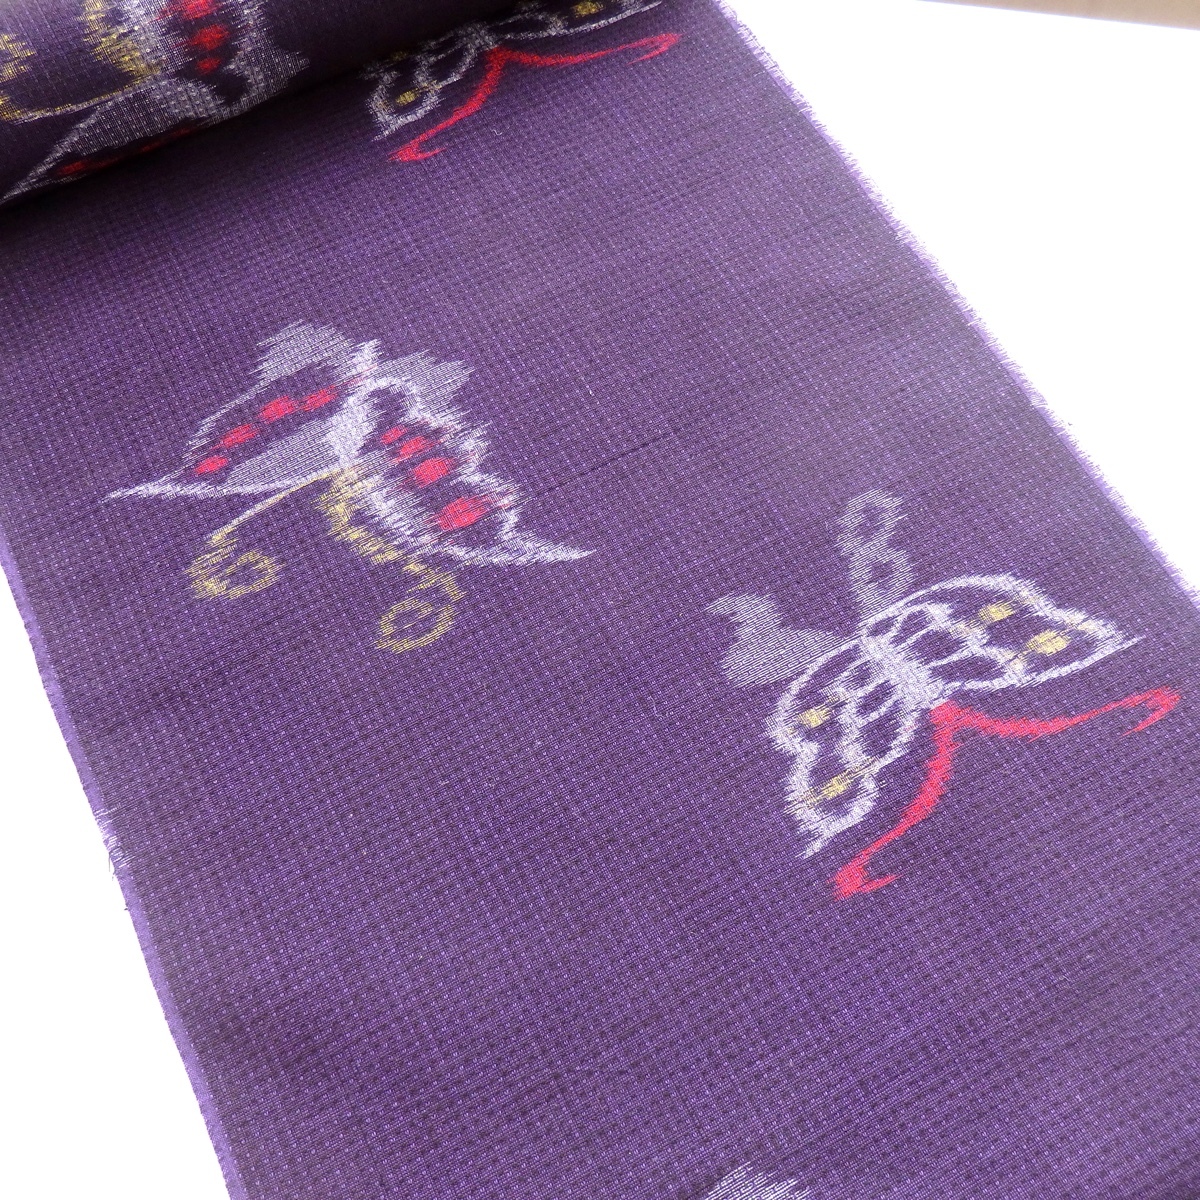  старый ткань Kurume . ослабленное крепление .. потертость ... хлопок 100% бабочка . рисунок Nakayama . завод ткань не использовался ткань упрощенный - gire японский костюм японская одежда 